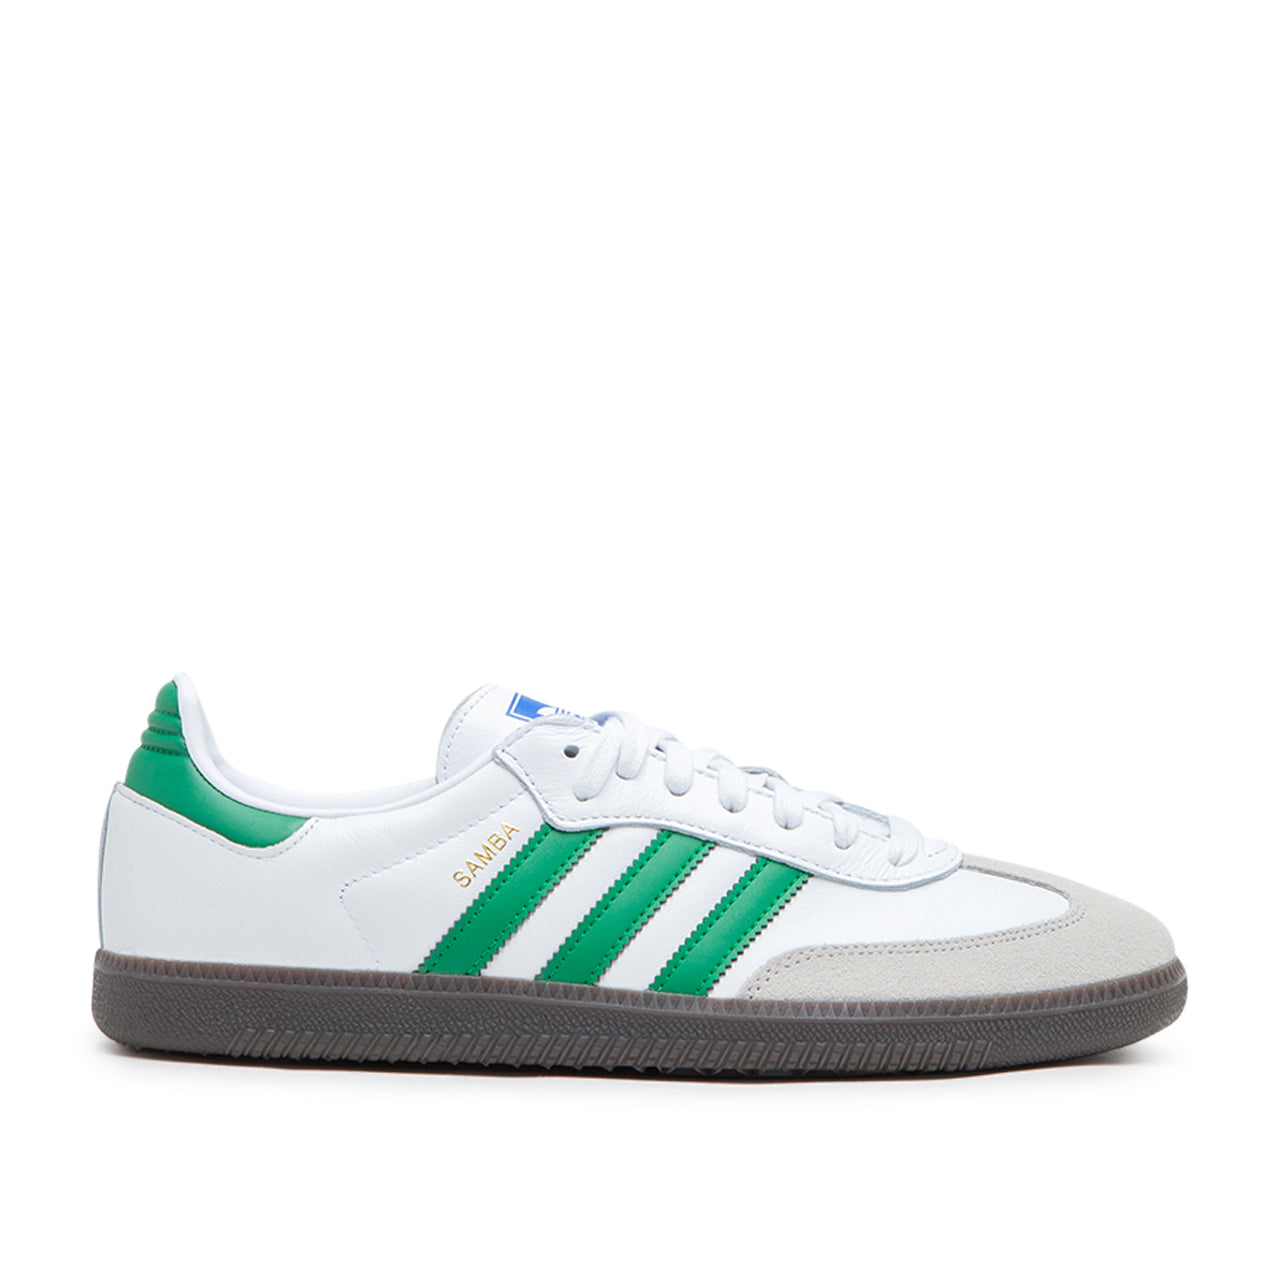 adidas Samba OG (White / Green / Grey) IG1024 - Allike Store